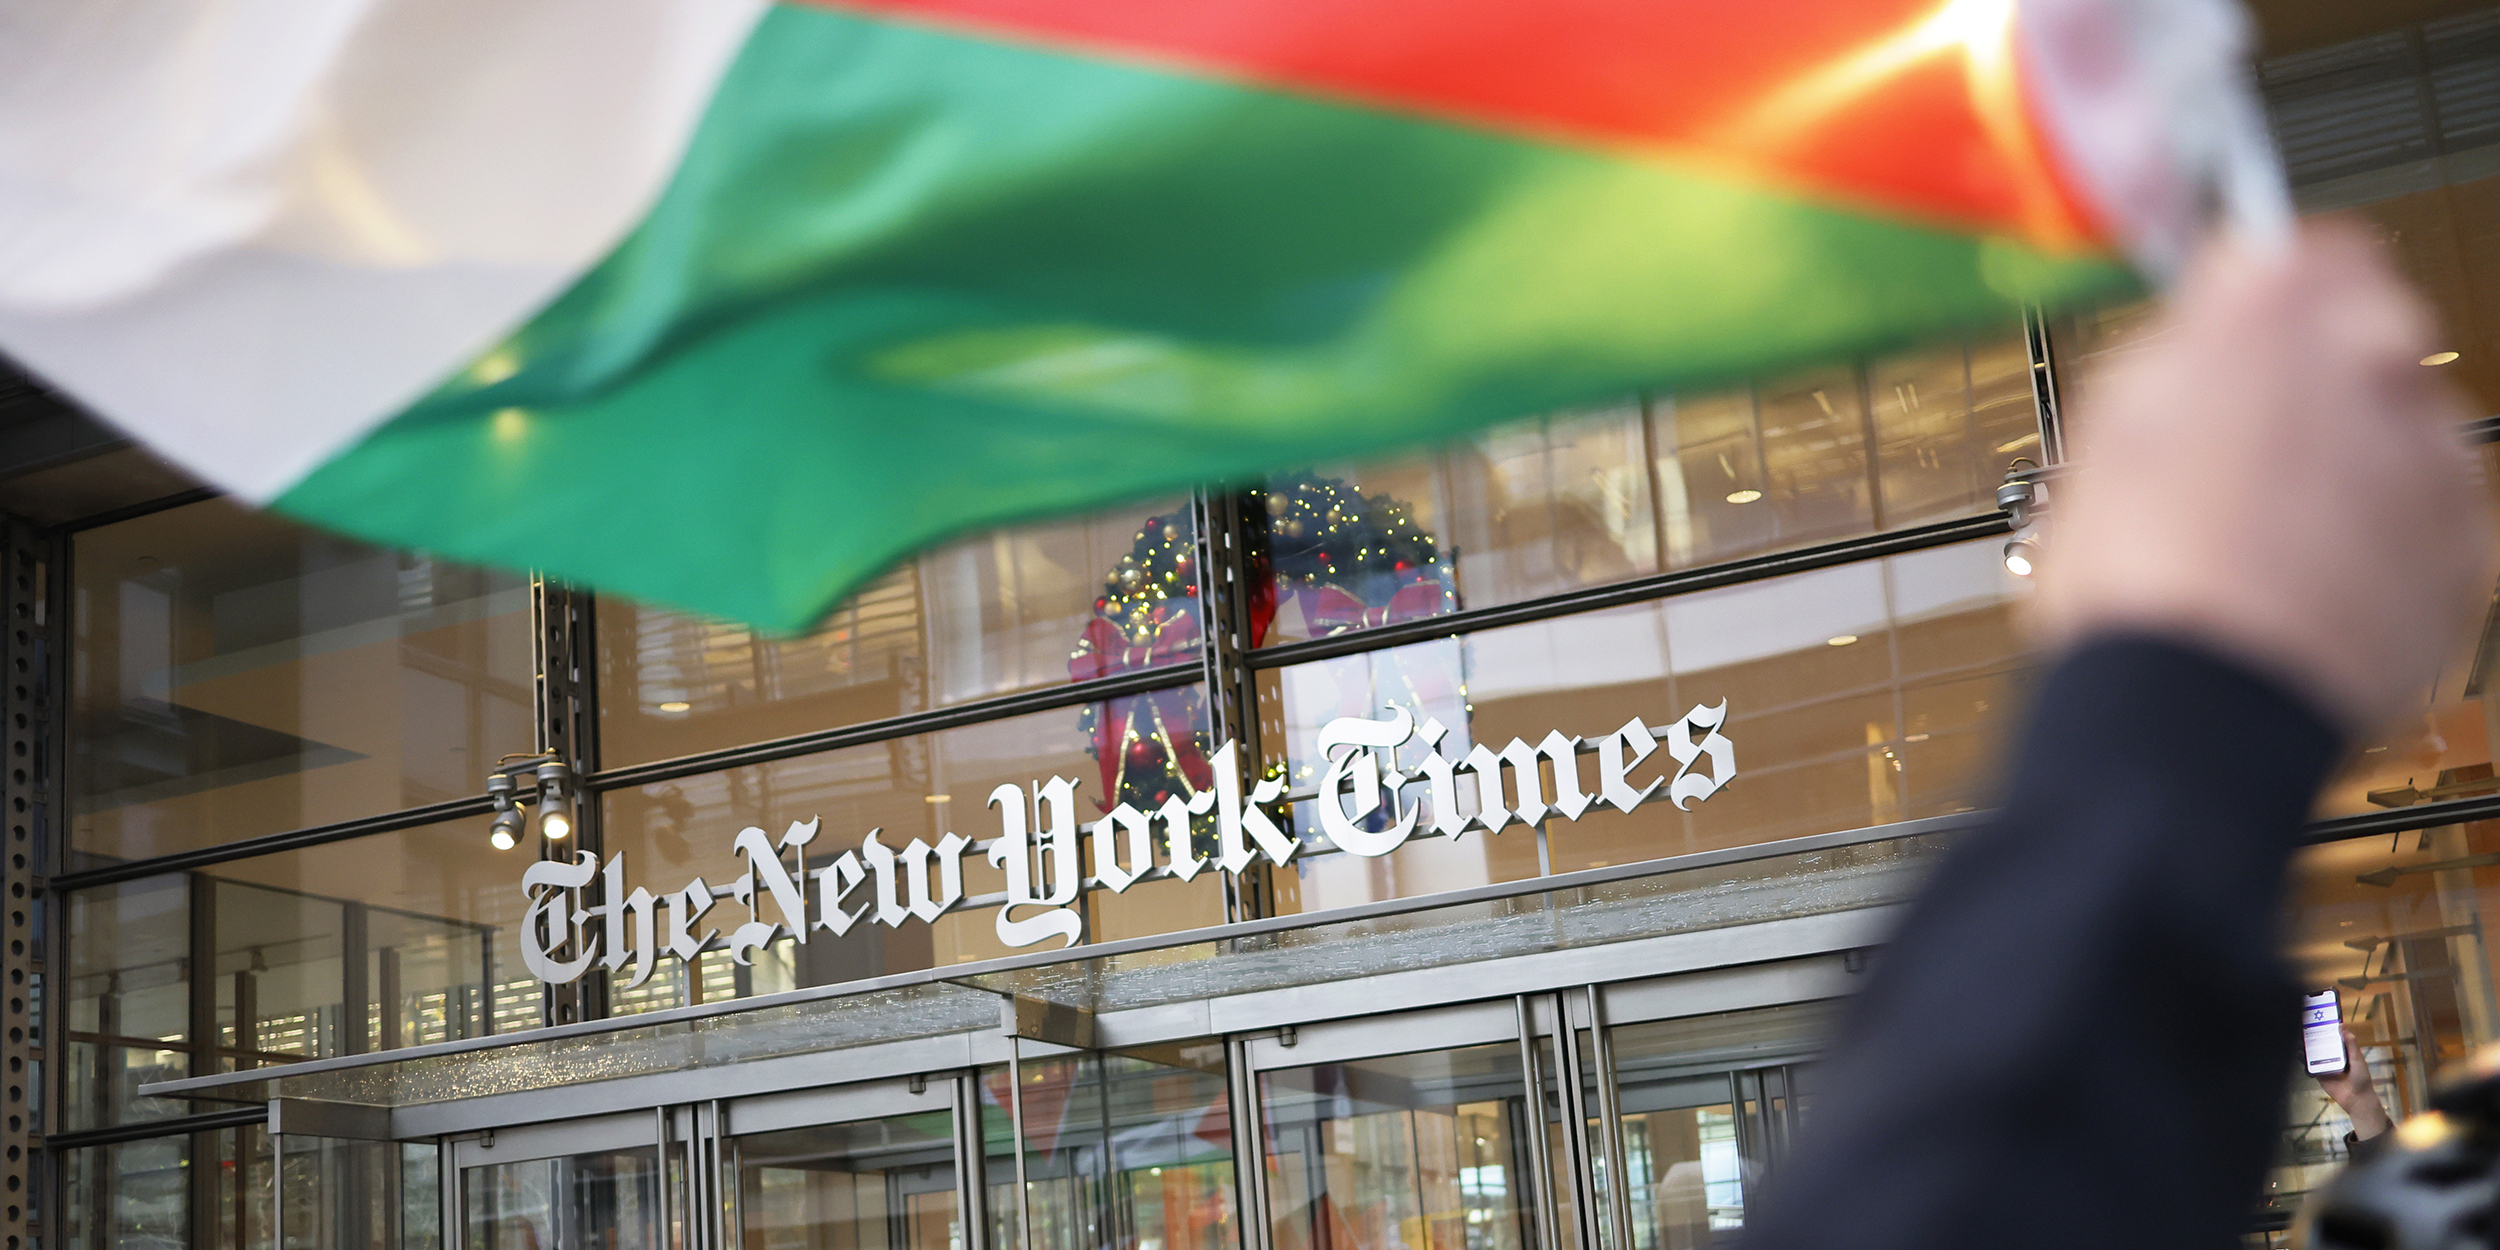 عاجل  نيويورك تايمز توجه صحفييها لتقييد استخدام فلسطين، الاراضي المحتلة، الابادة الجماعية، التطهير العرقي